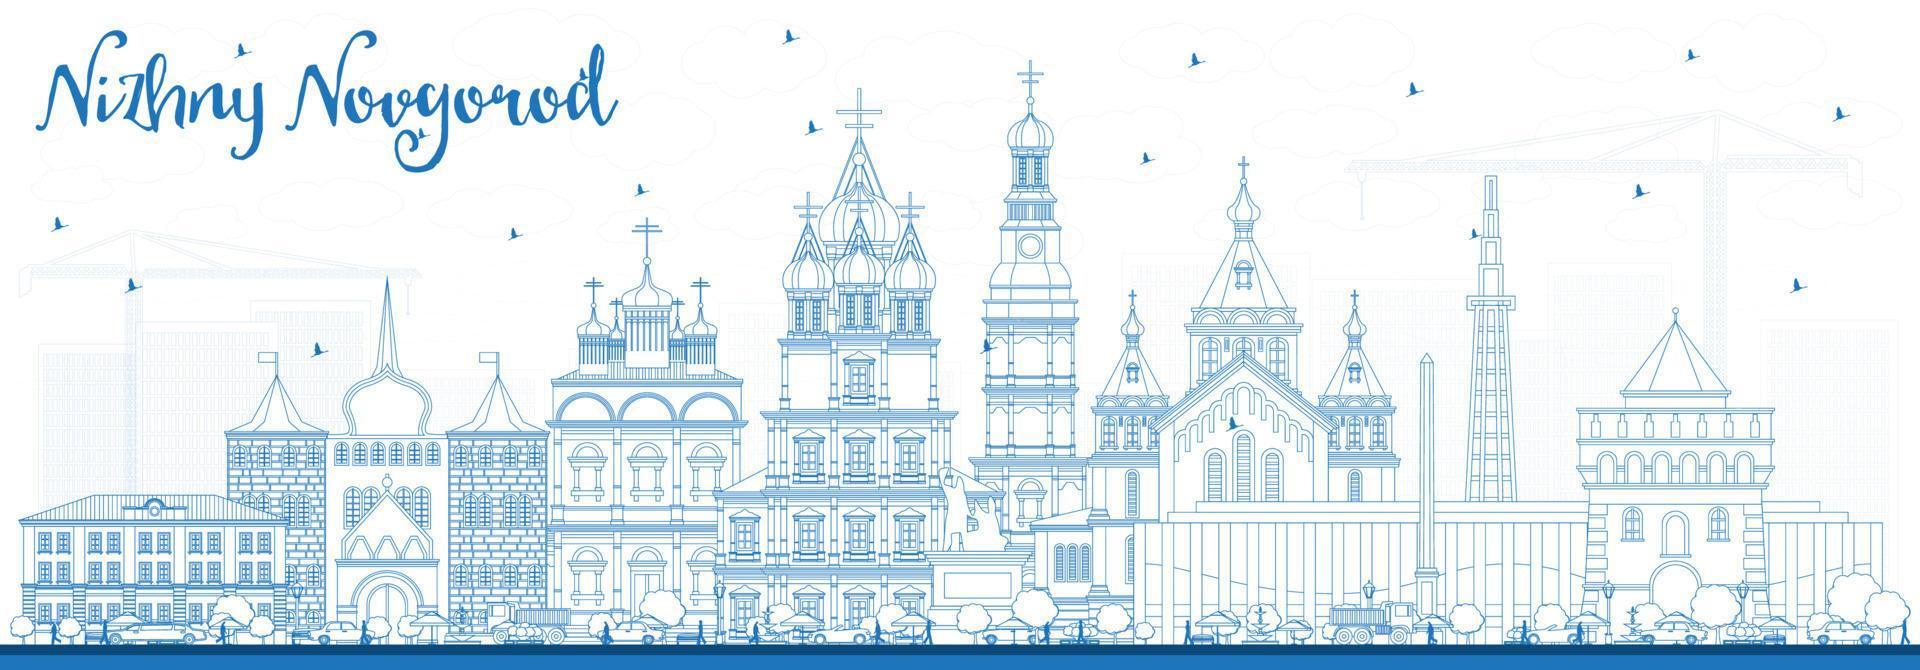 delinear el horizonte de la ciudad de nizhny novgorod rusia con edificios azules. vector